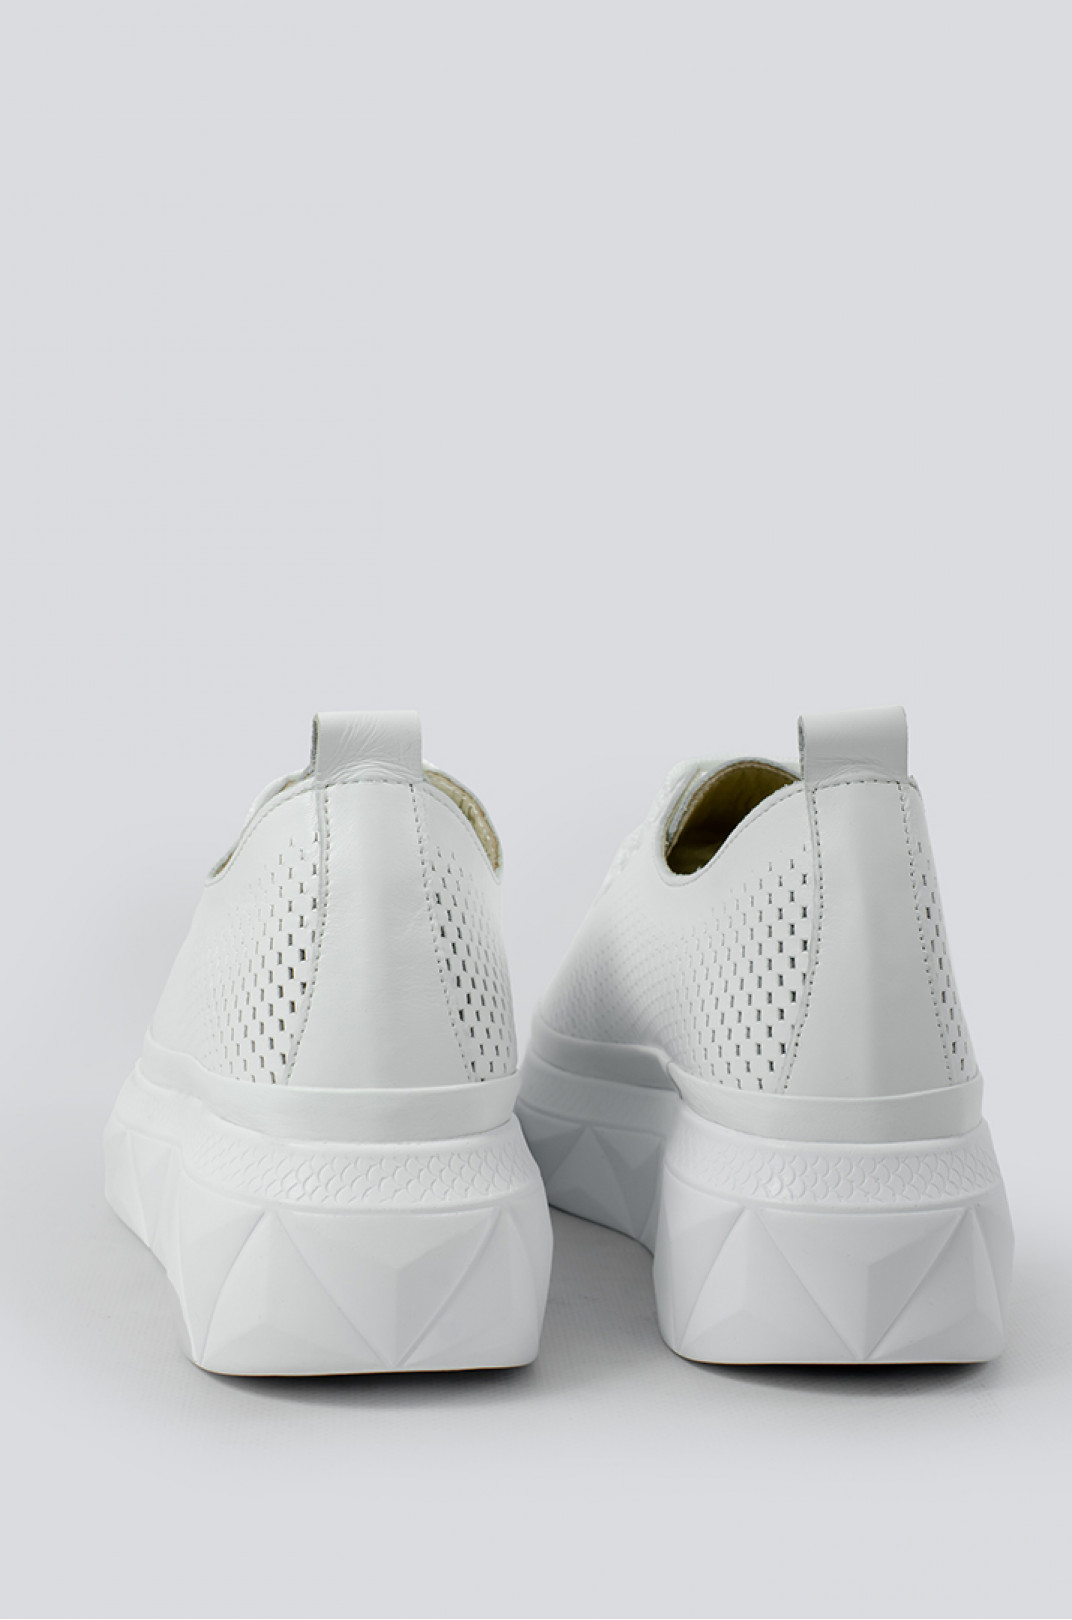 Туфлі білі з перфорацією великих розмірів